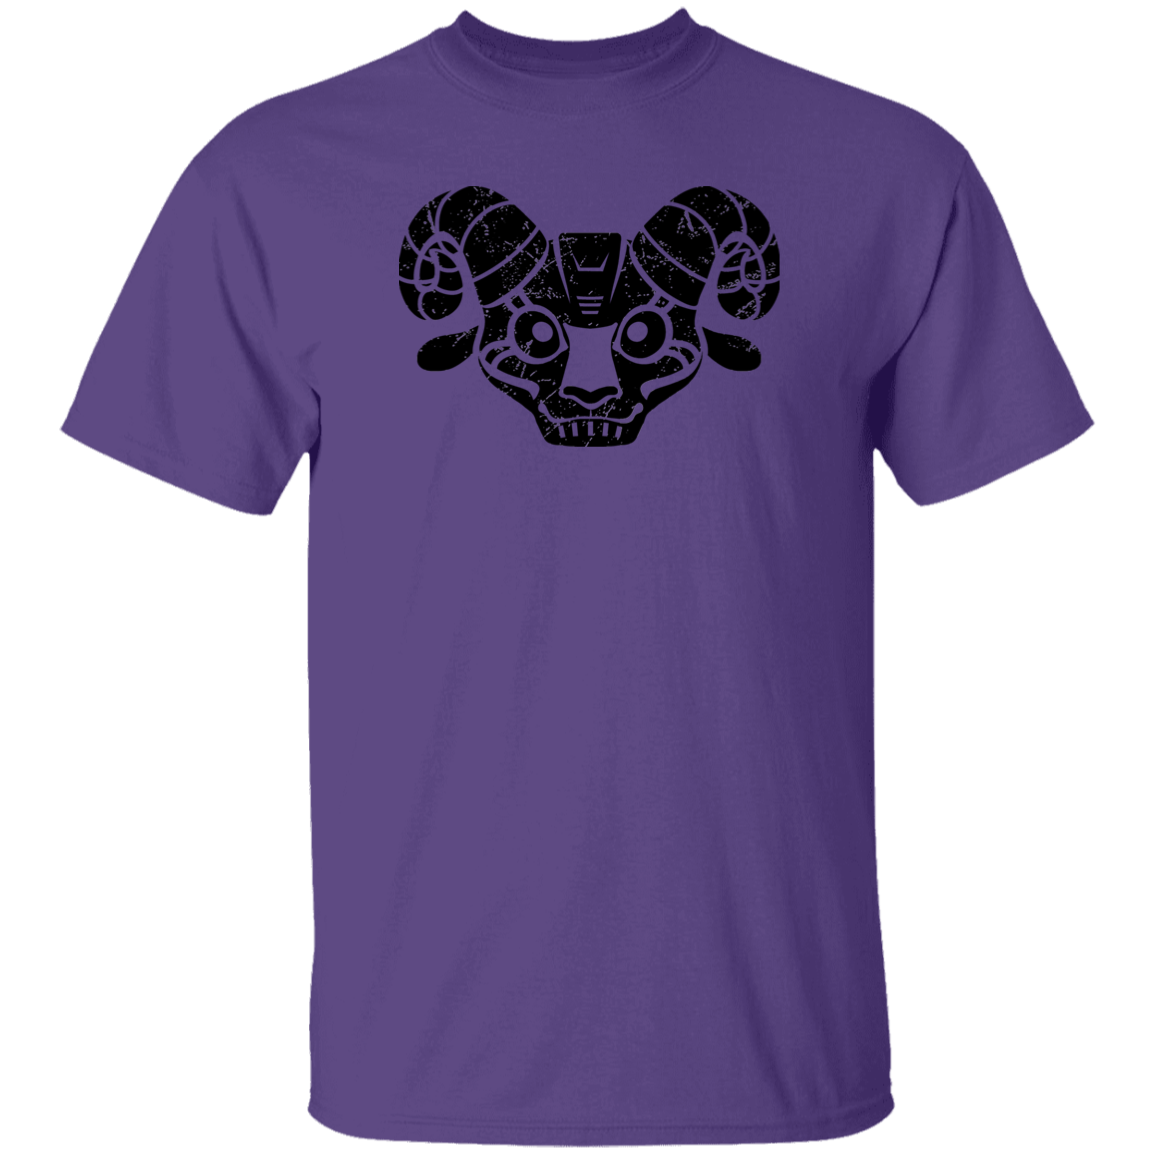 Black Distressed Emblem T-Shirt for Kids (Goat/BILLIE)